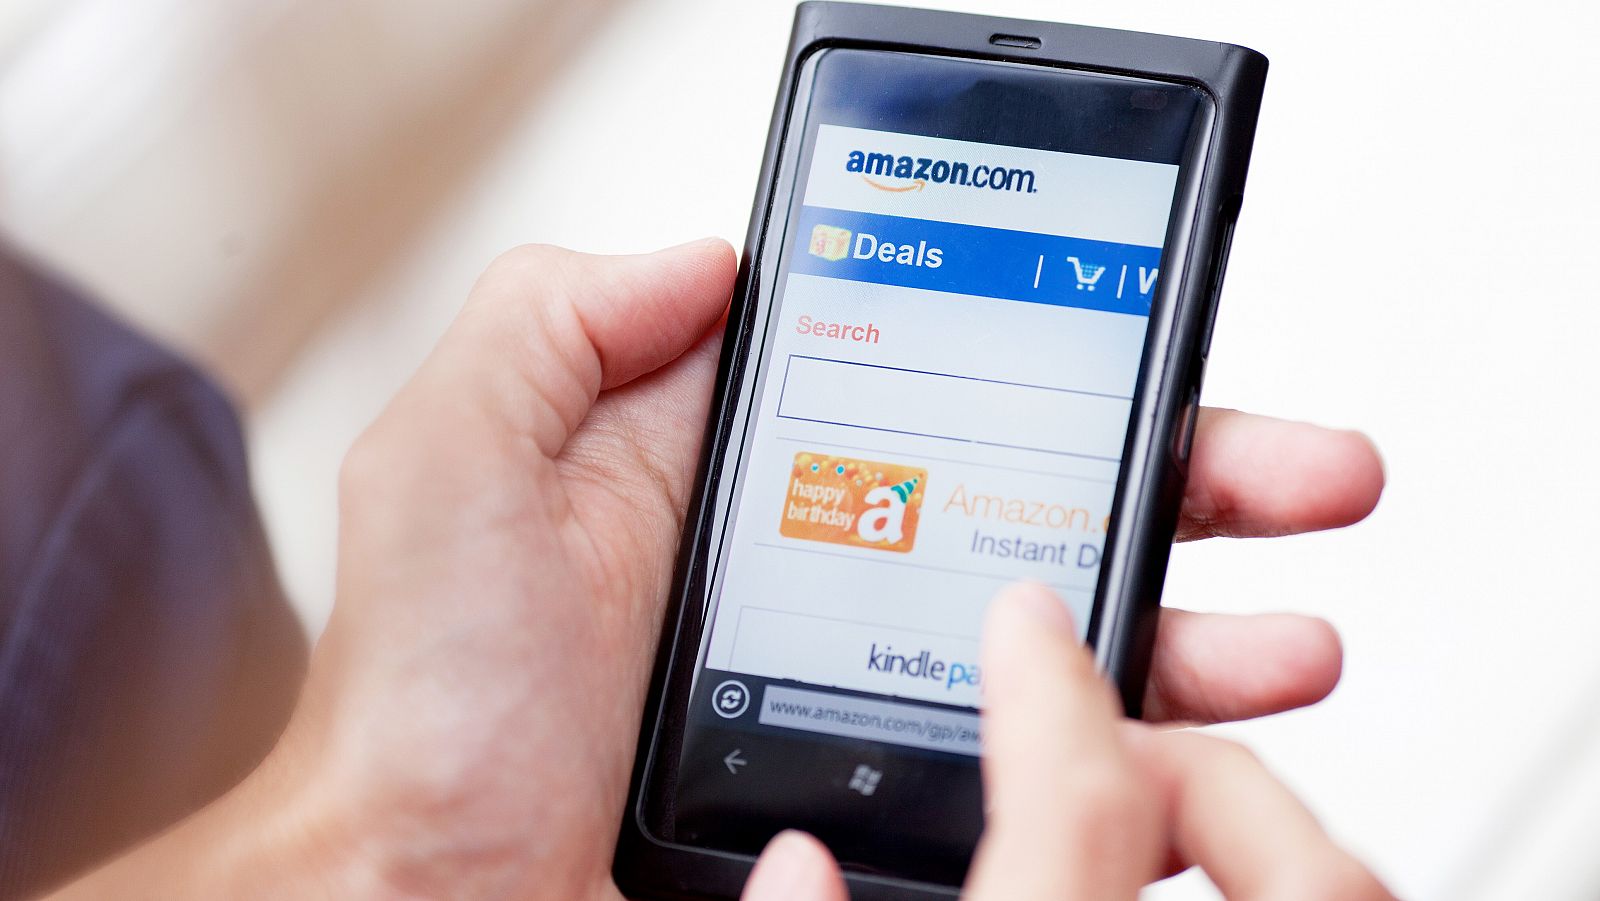 Un usuario interactúa con una notificación de Amazon en su teléfono móvil.